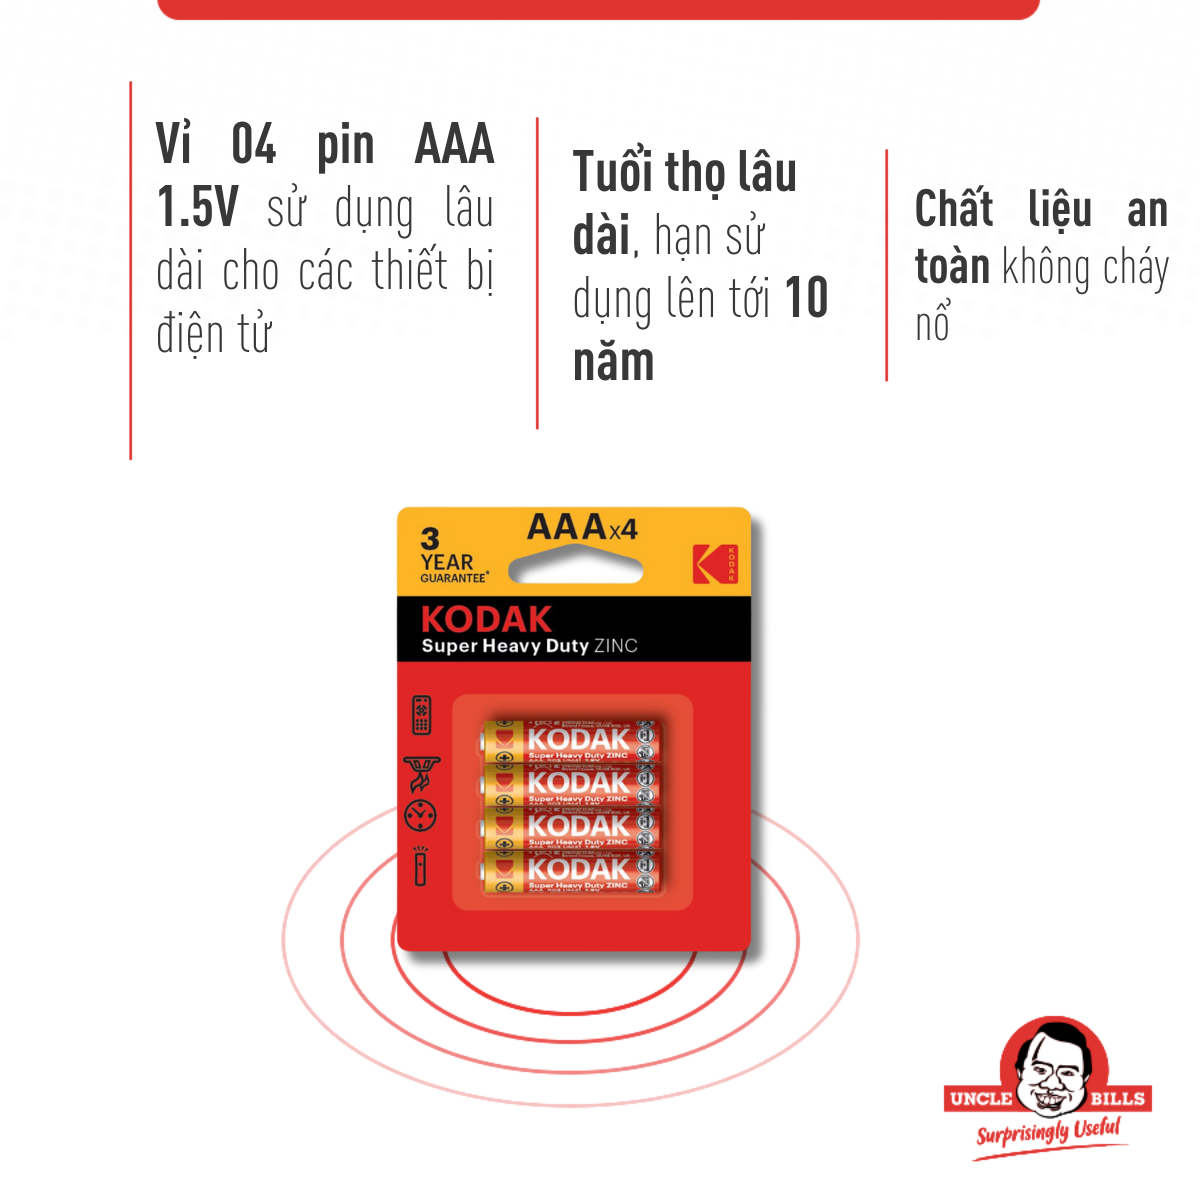 Bộ 4 Pin tiểu Kodak Alkaline AAA điện thế 1.5V Uncle Bills IB0120 